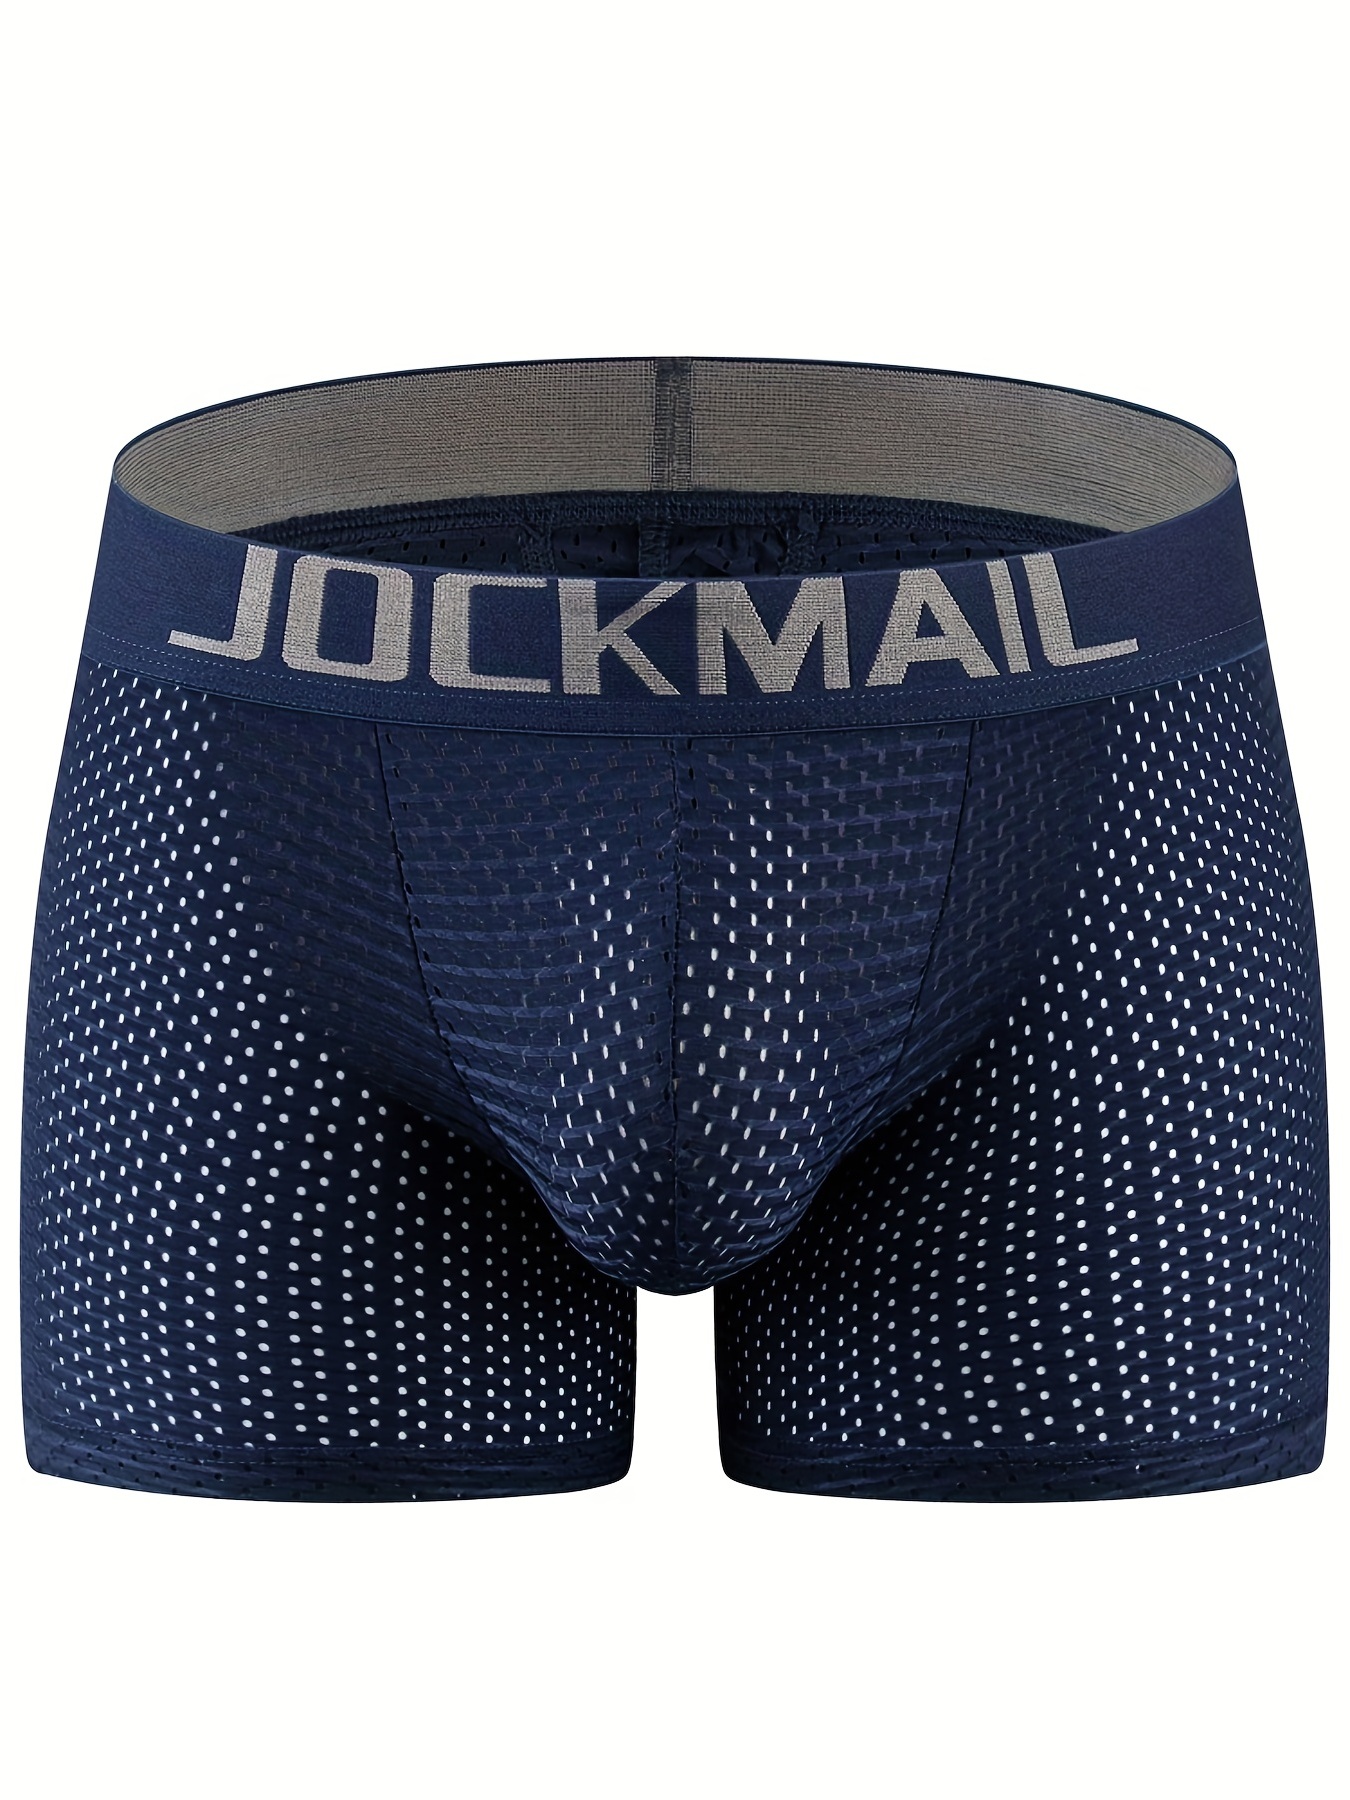 JOCKMAIL 3PCS/Packs Men Underwear Briefs Cotton Mens Briefs Low Waist Mens  Boxer Briefs (M, Black-White-Gray) : : Clothing, Shoes &  Accessories